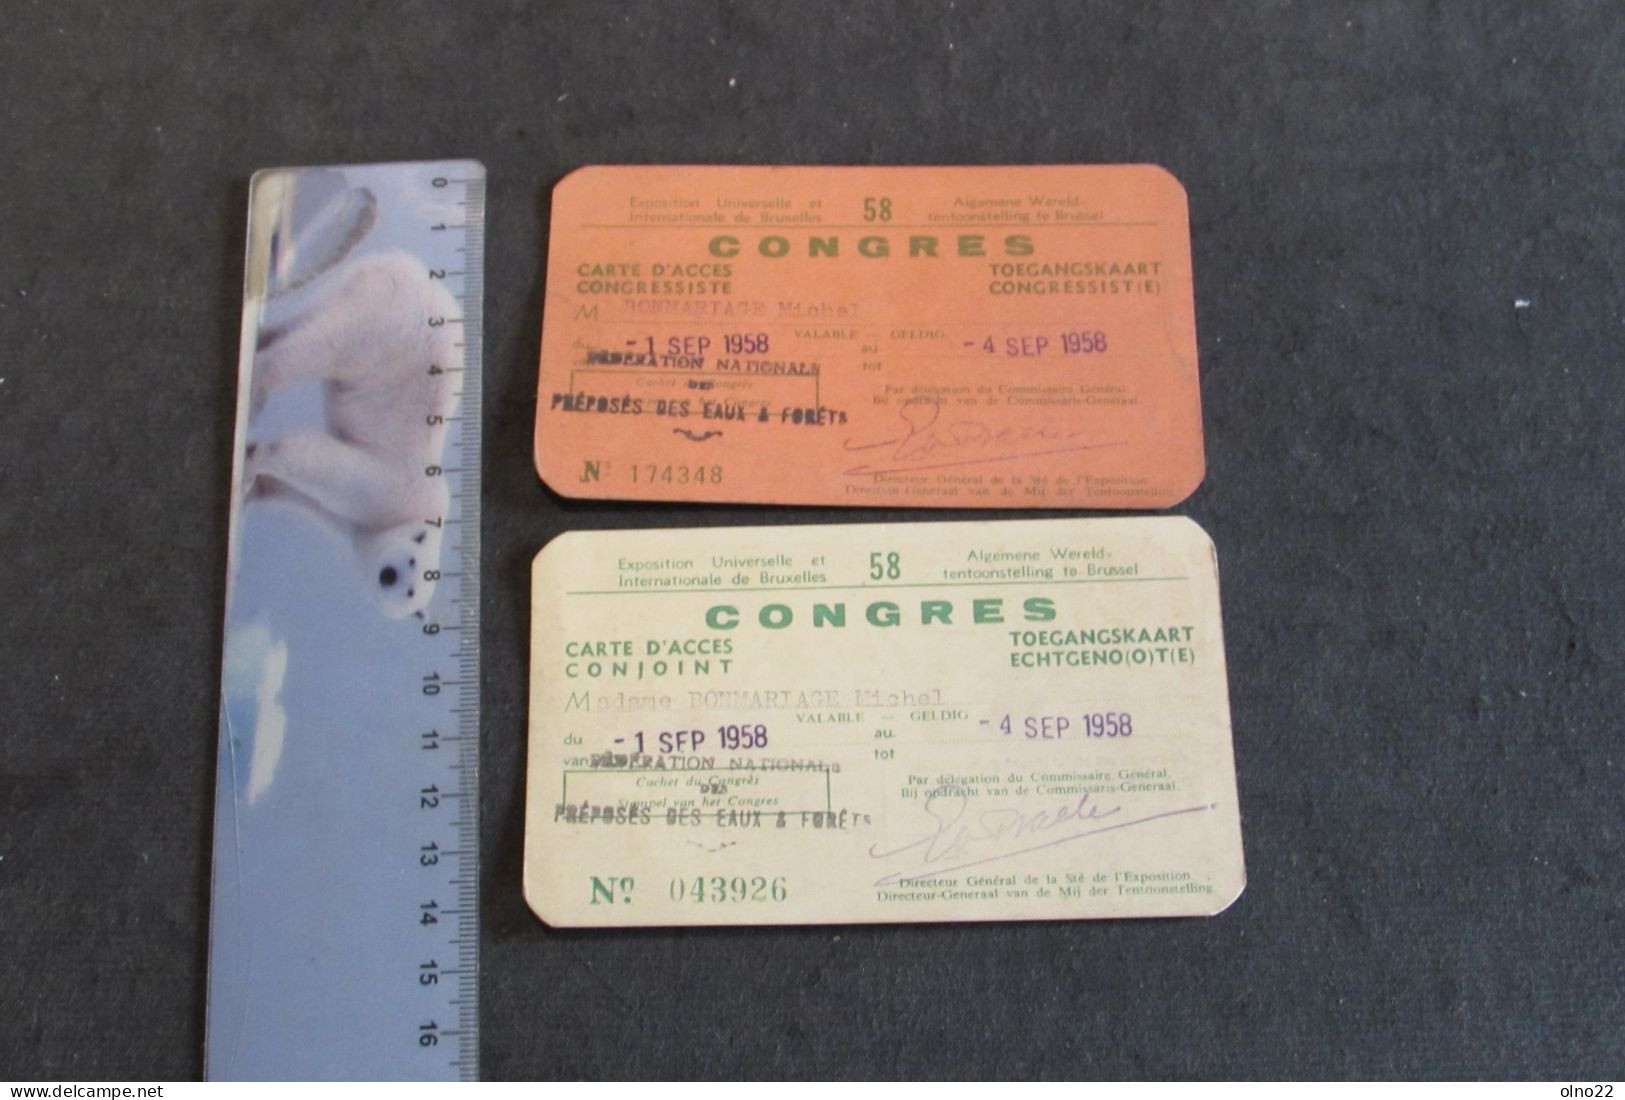 BRUXELLES EXPO 1958 - CARTE D'ACCES A UN CONGRES DU 1 AU 4/9/58 - A  M. ET Mme BONMARIAGE MICHEL - VOIR SCANS - Tickets - Vouchers